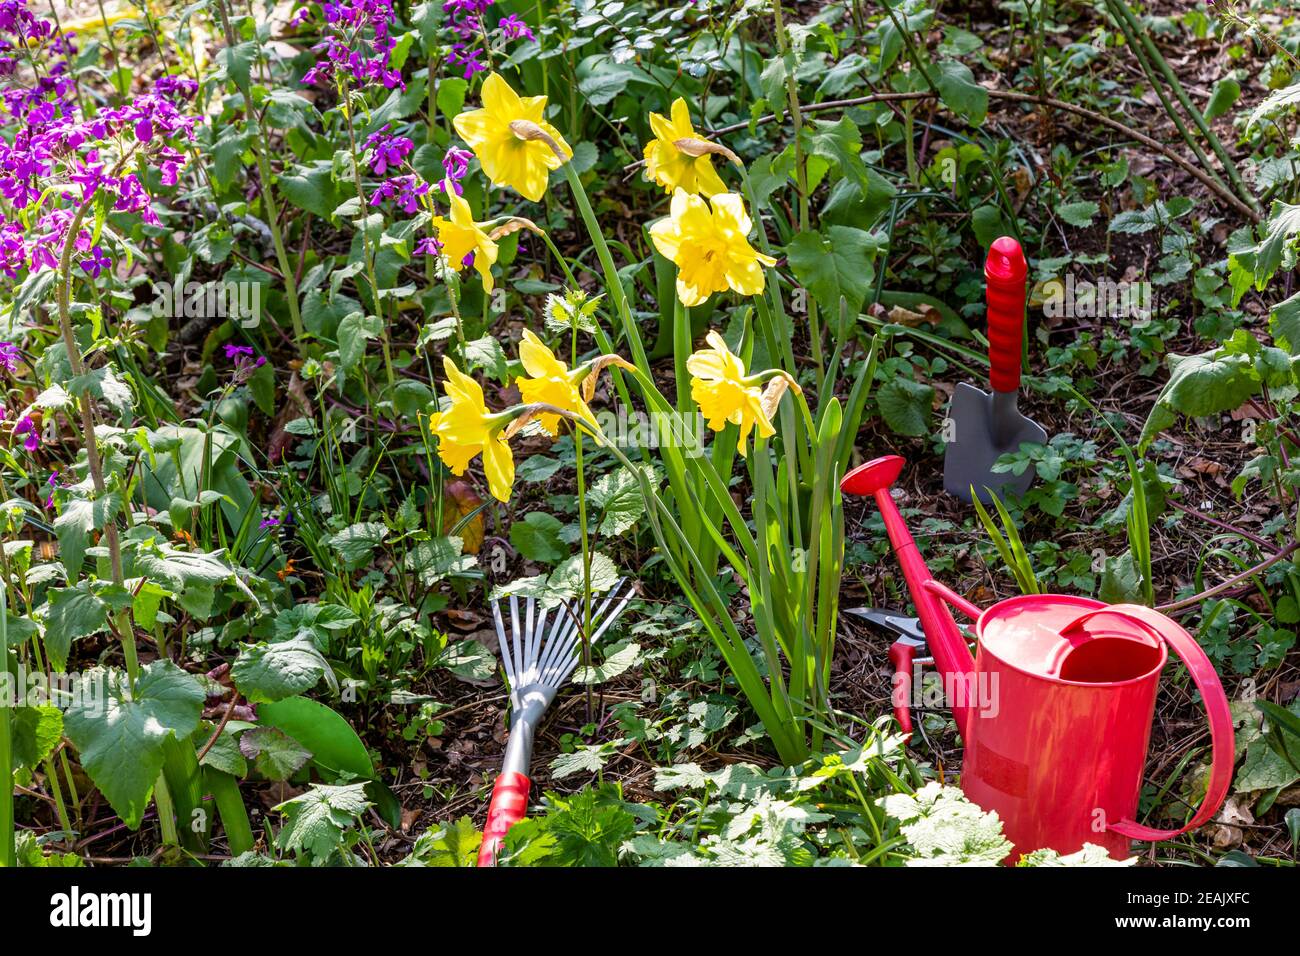 Gardening in a garden in spring Stock Photo